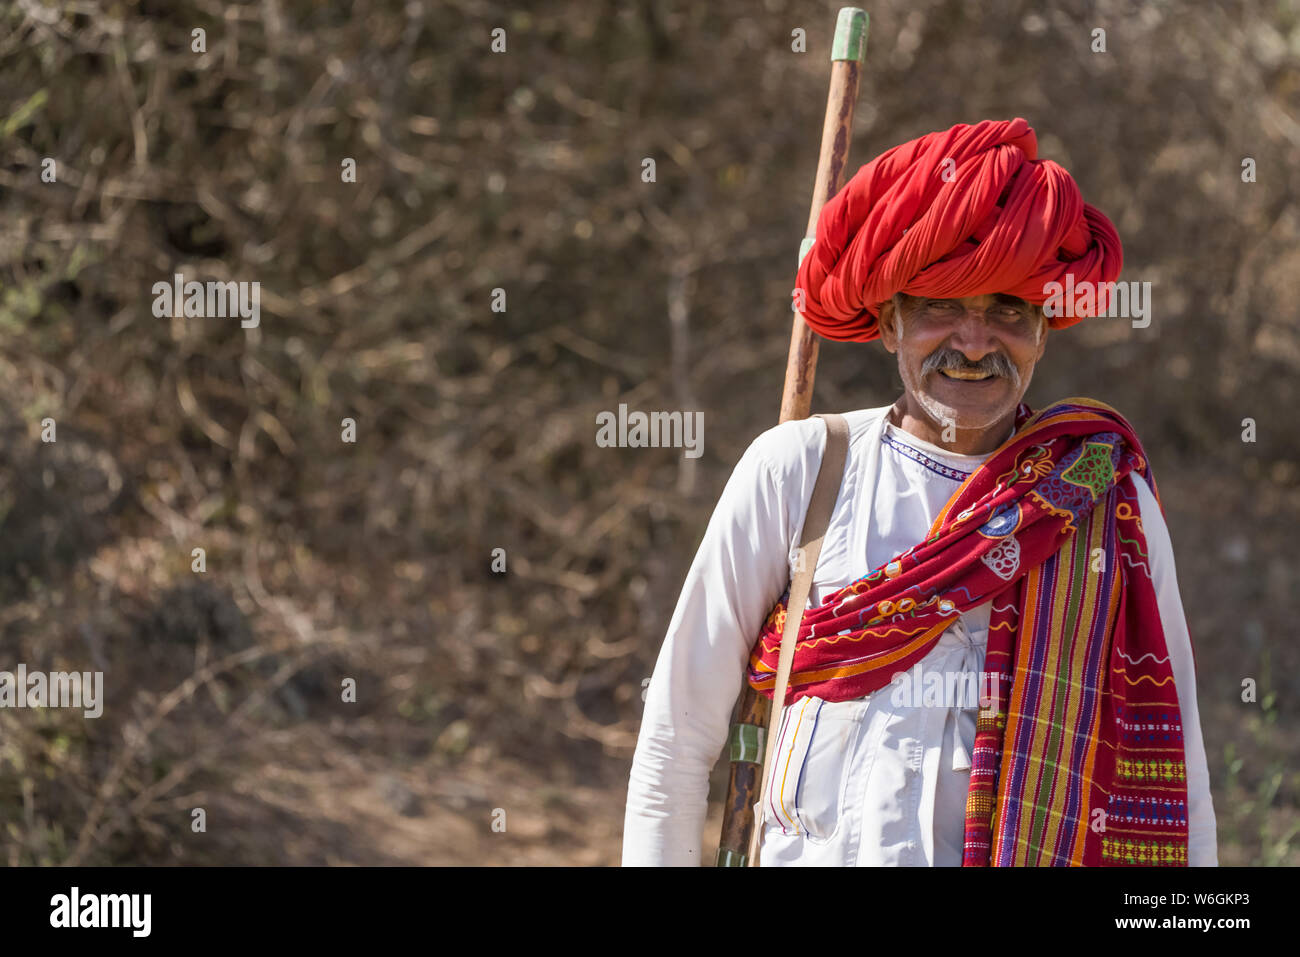 La coiffure et les vêtements traditionnels par les hommes dans la région du nord de l'Inde Jawai ; Rajasthan, Inde Banque D'Images